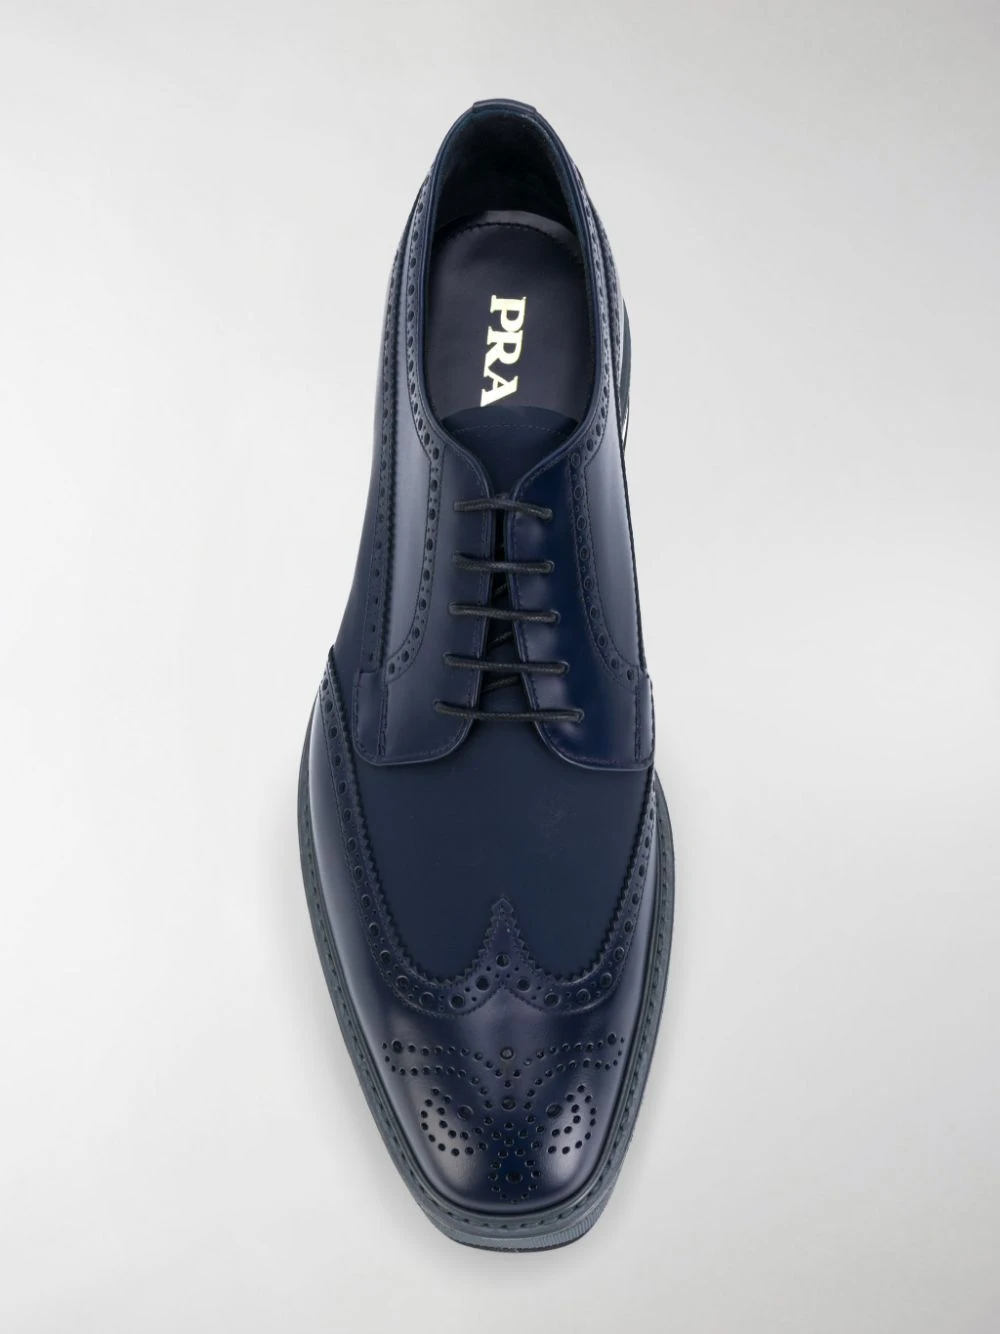 PRADA 男士深蓝色休闲皮鞋 2EG015-3H6T-F0216 商品